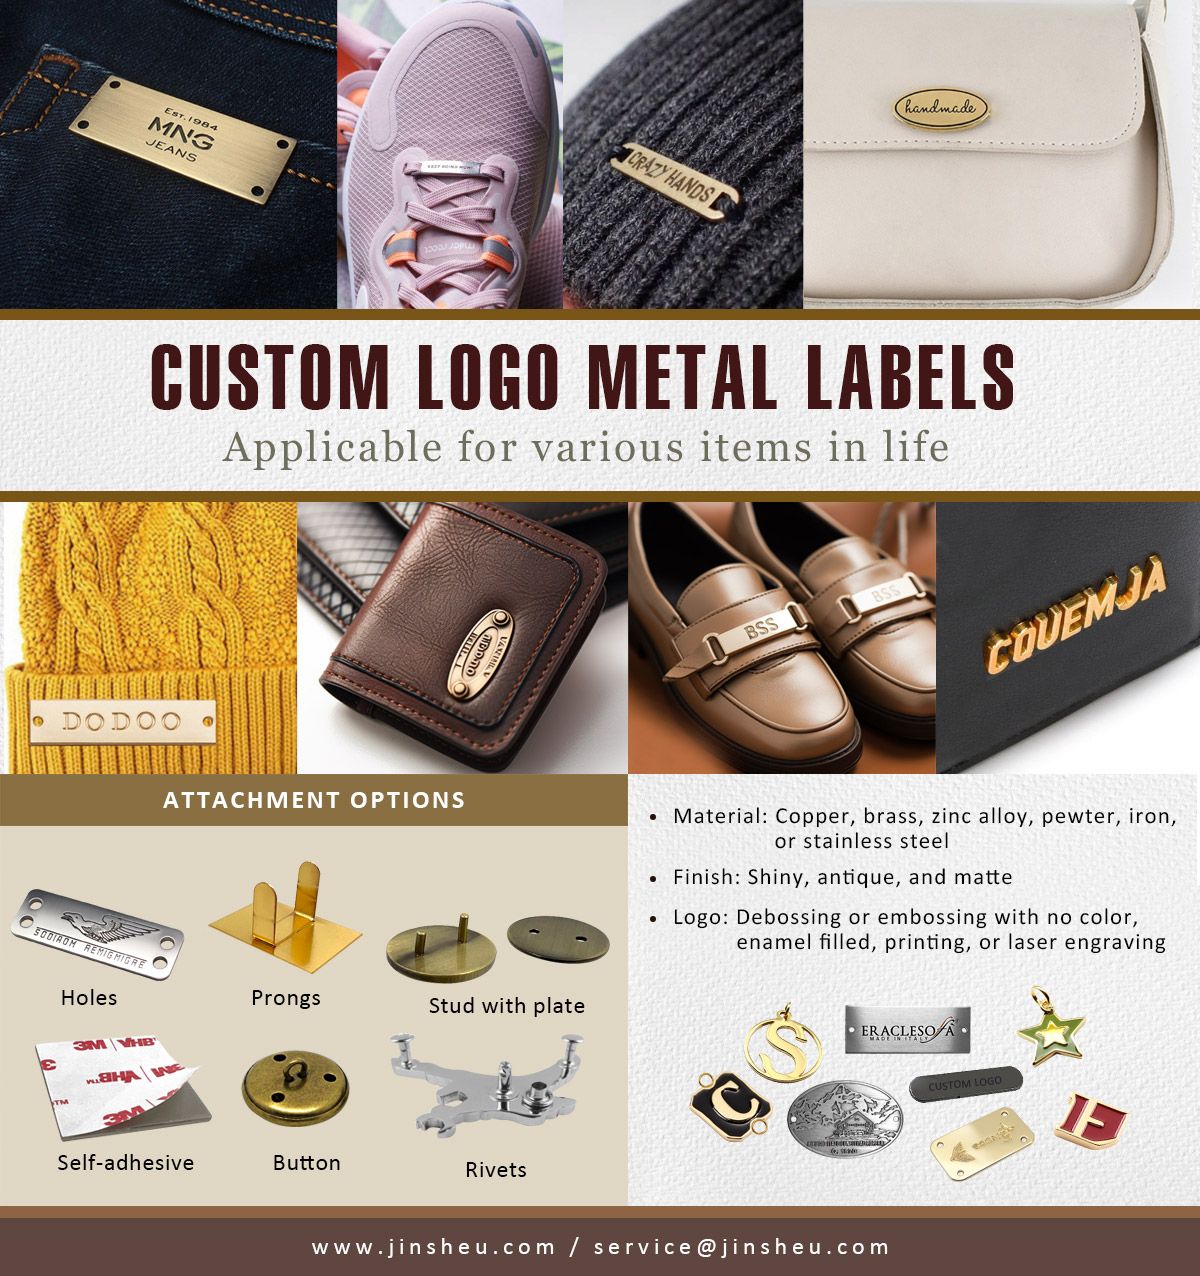 Etiquetas de metal personalizadas con logotipos de marca